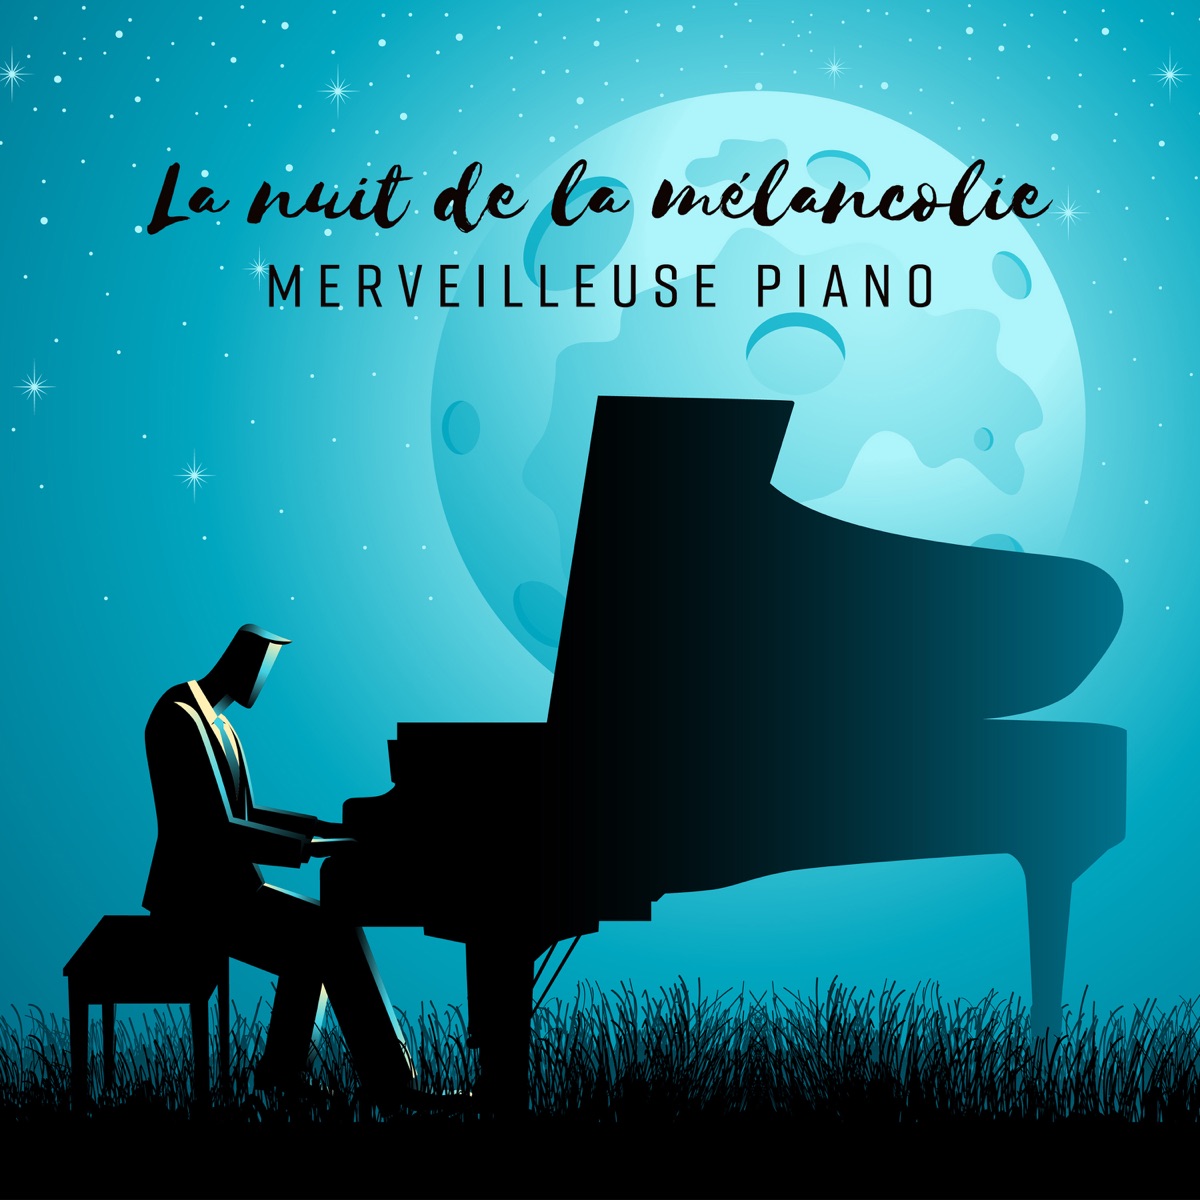 La nuit de la mélancolie - Merveilleuse piano, Musique calme et triste”  álbum de Triste piano musique oasis en Apple Music